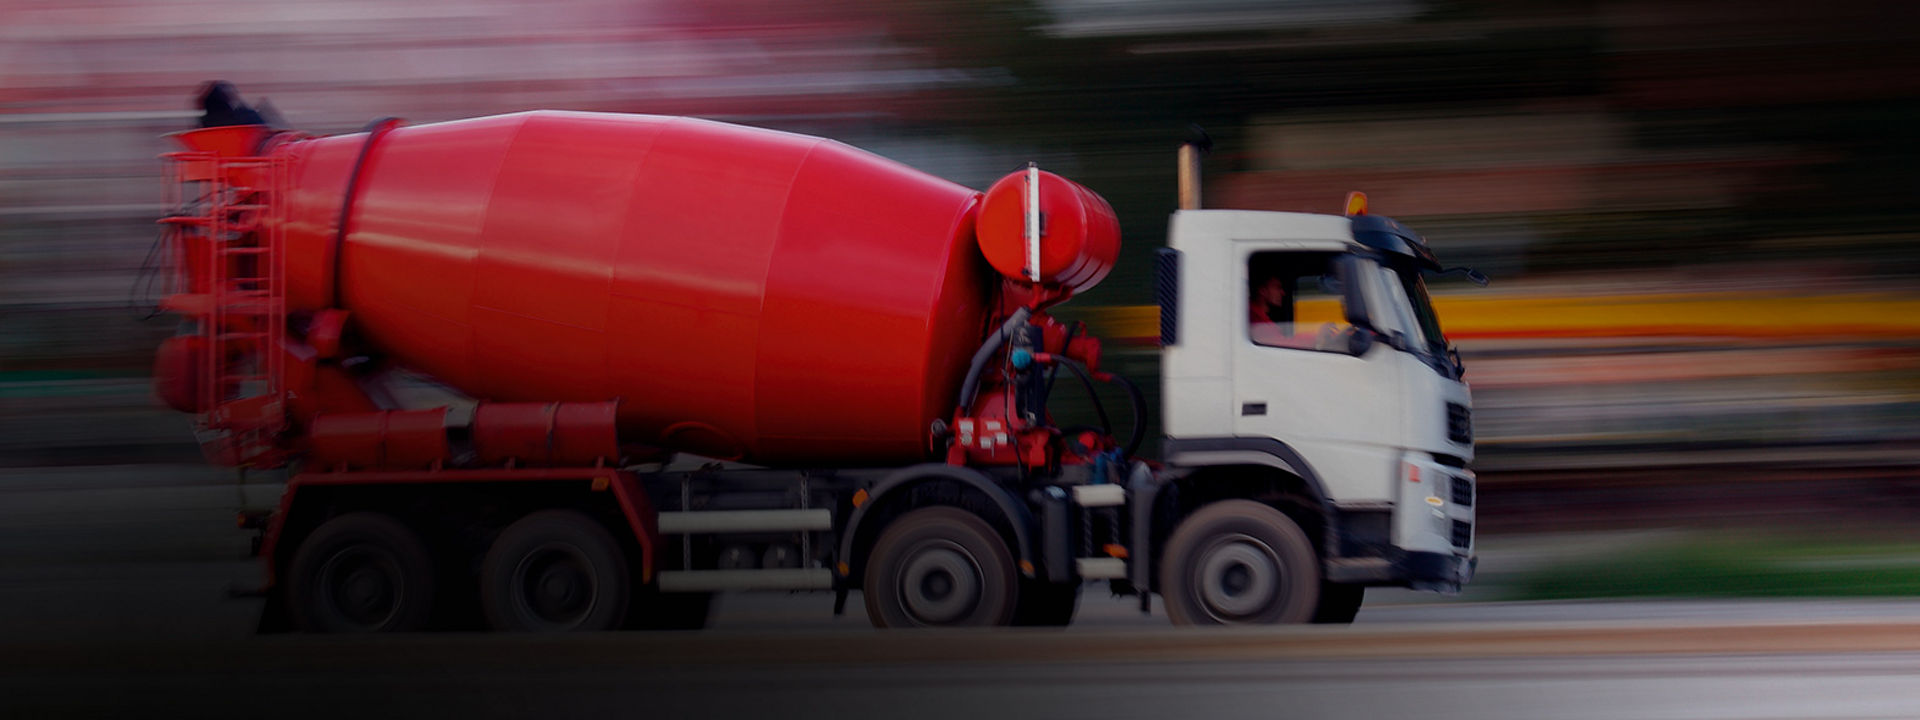 Cette image vous montre un camion toupie équipé de pneus Usage Mixte Bridgestone qui roule sur une autoroute vers un chantier.